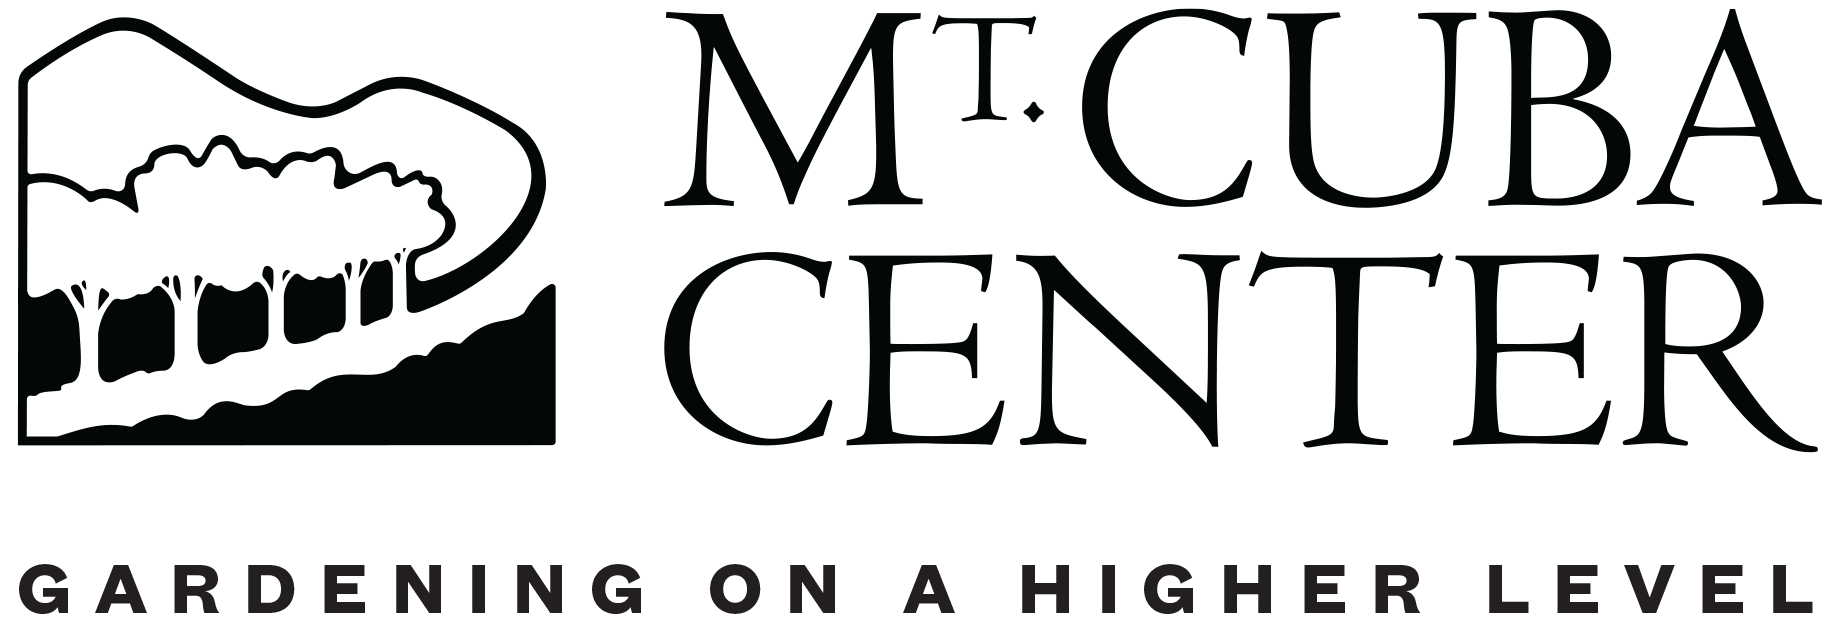 mcc-logo-tagline.png